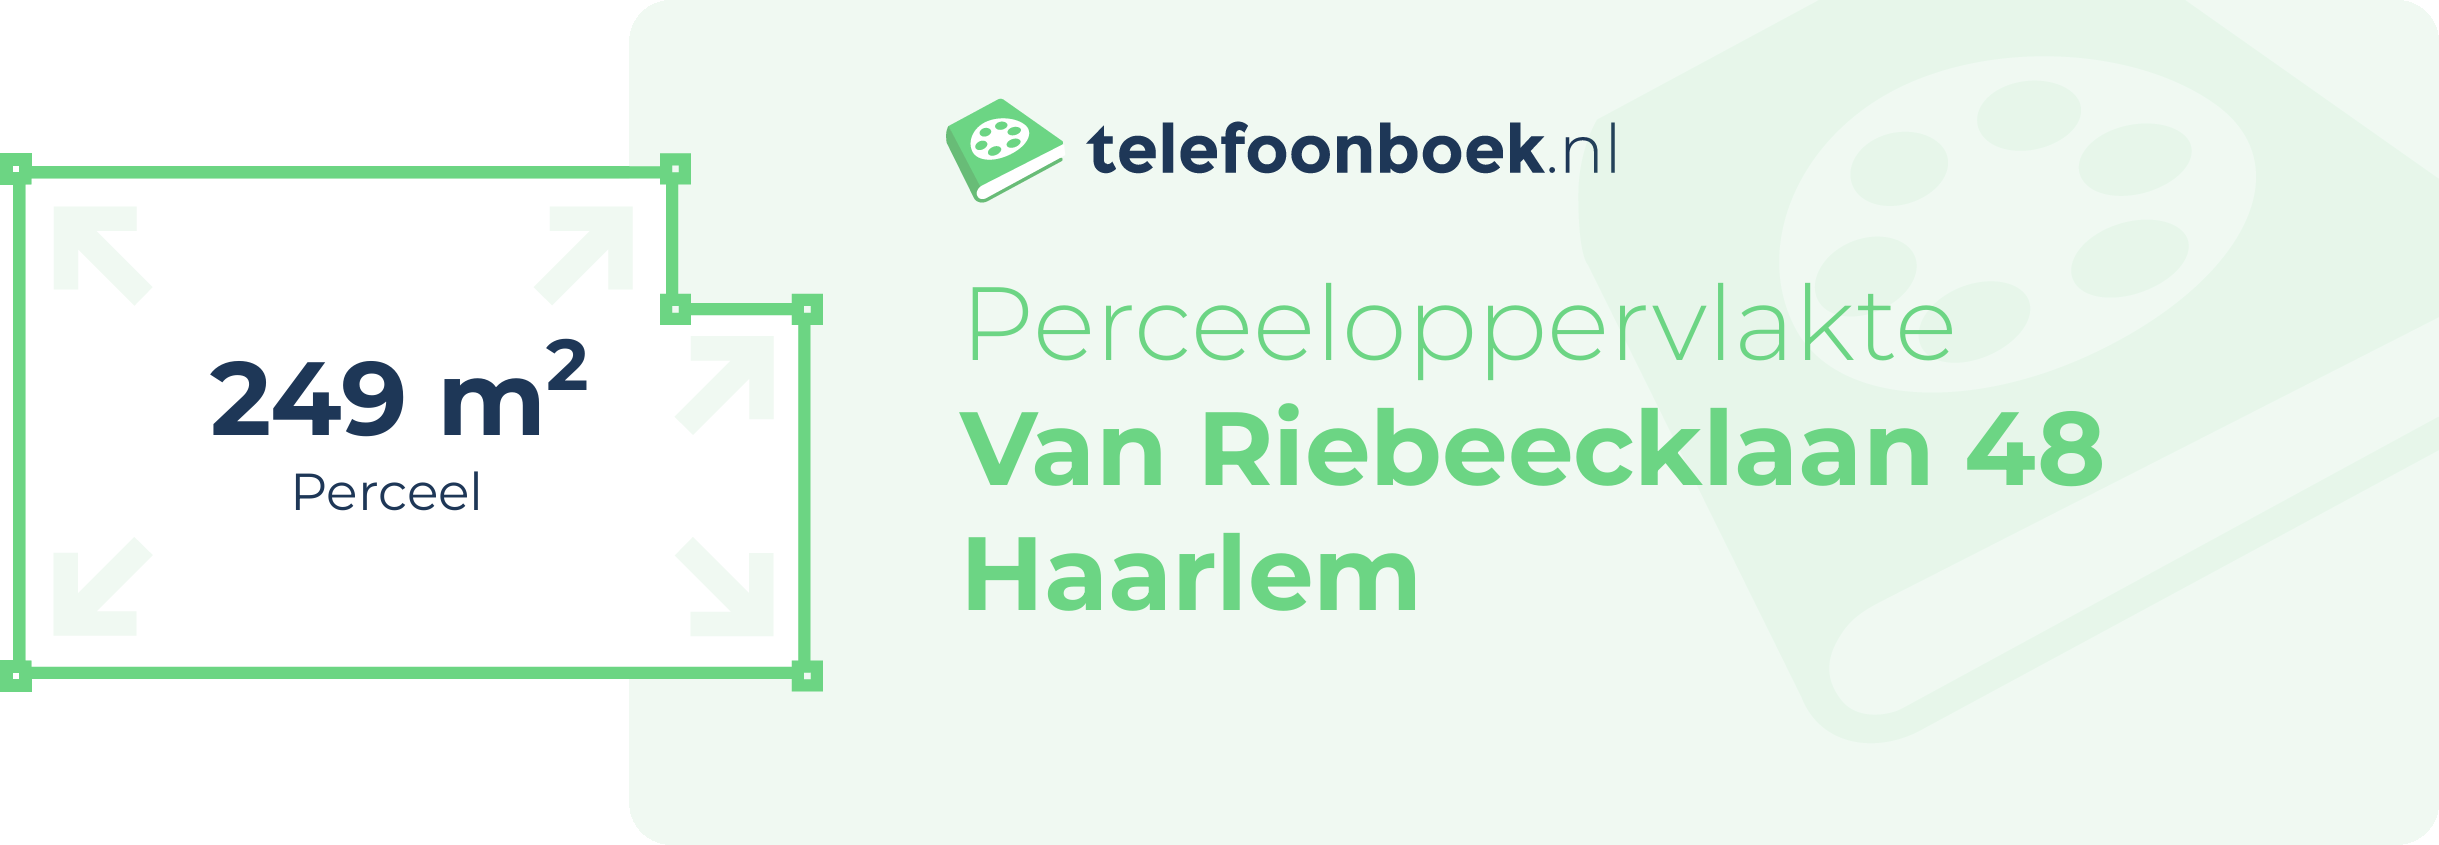 Perceeloppervlakte Van Riebeecklaan 48 Haarlem